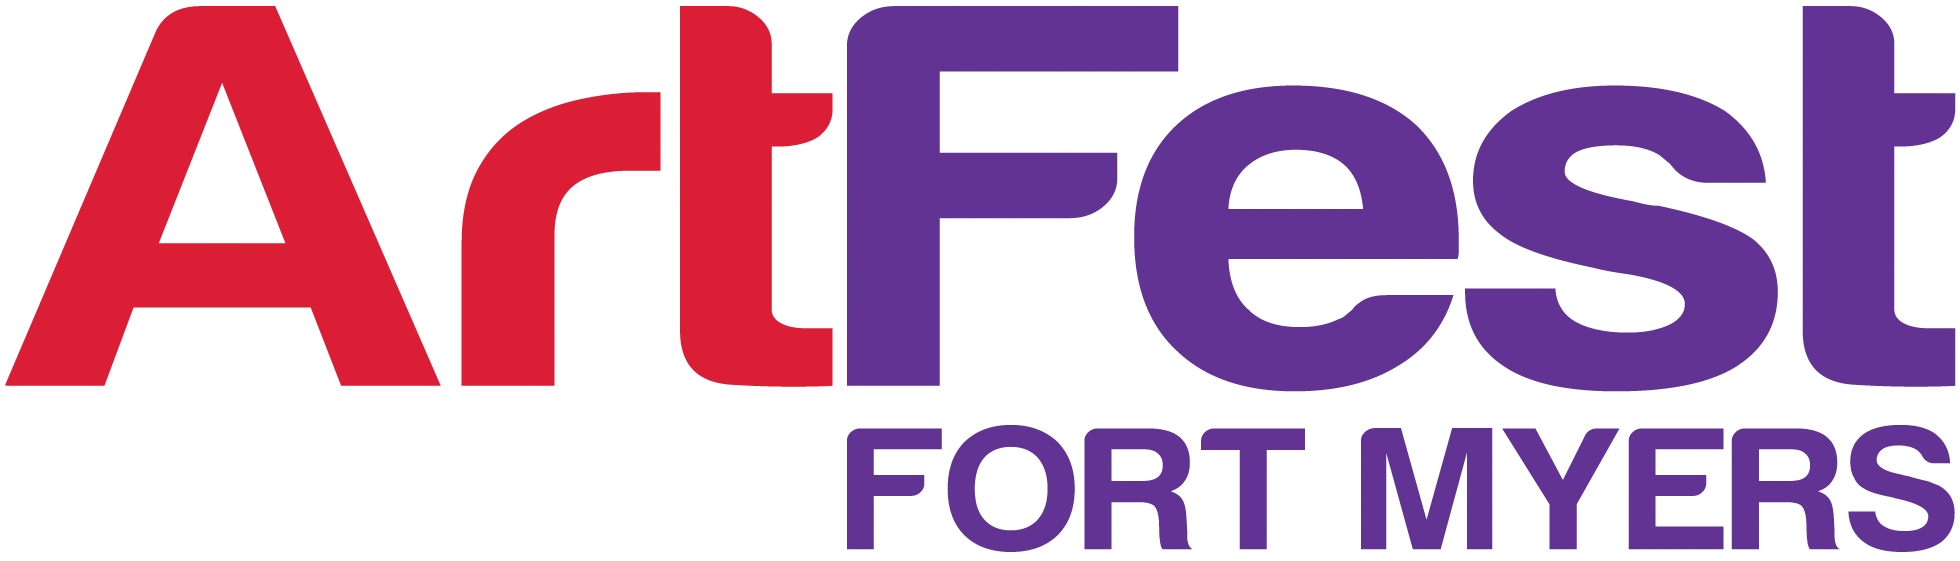 ArtFest Fort Myers